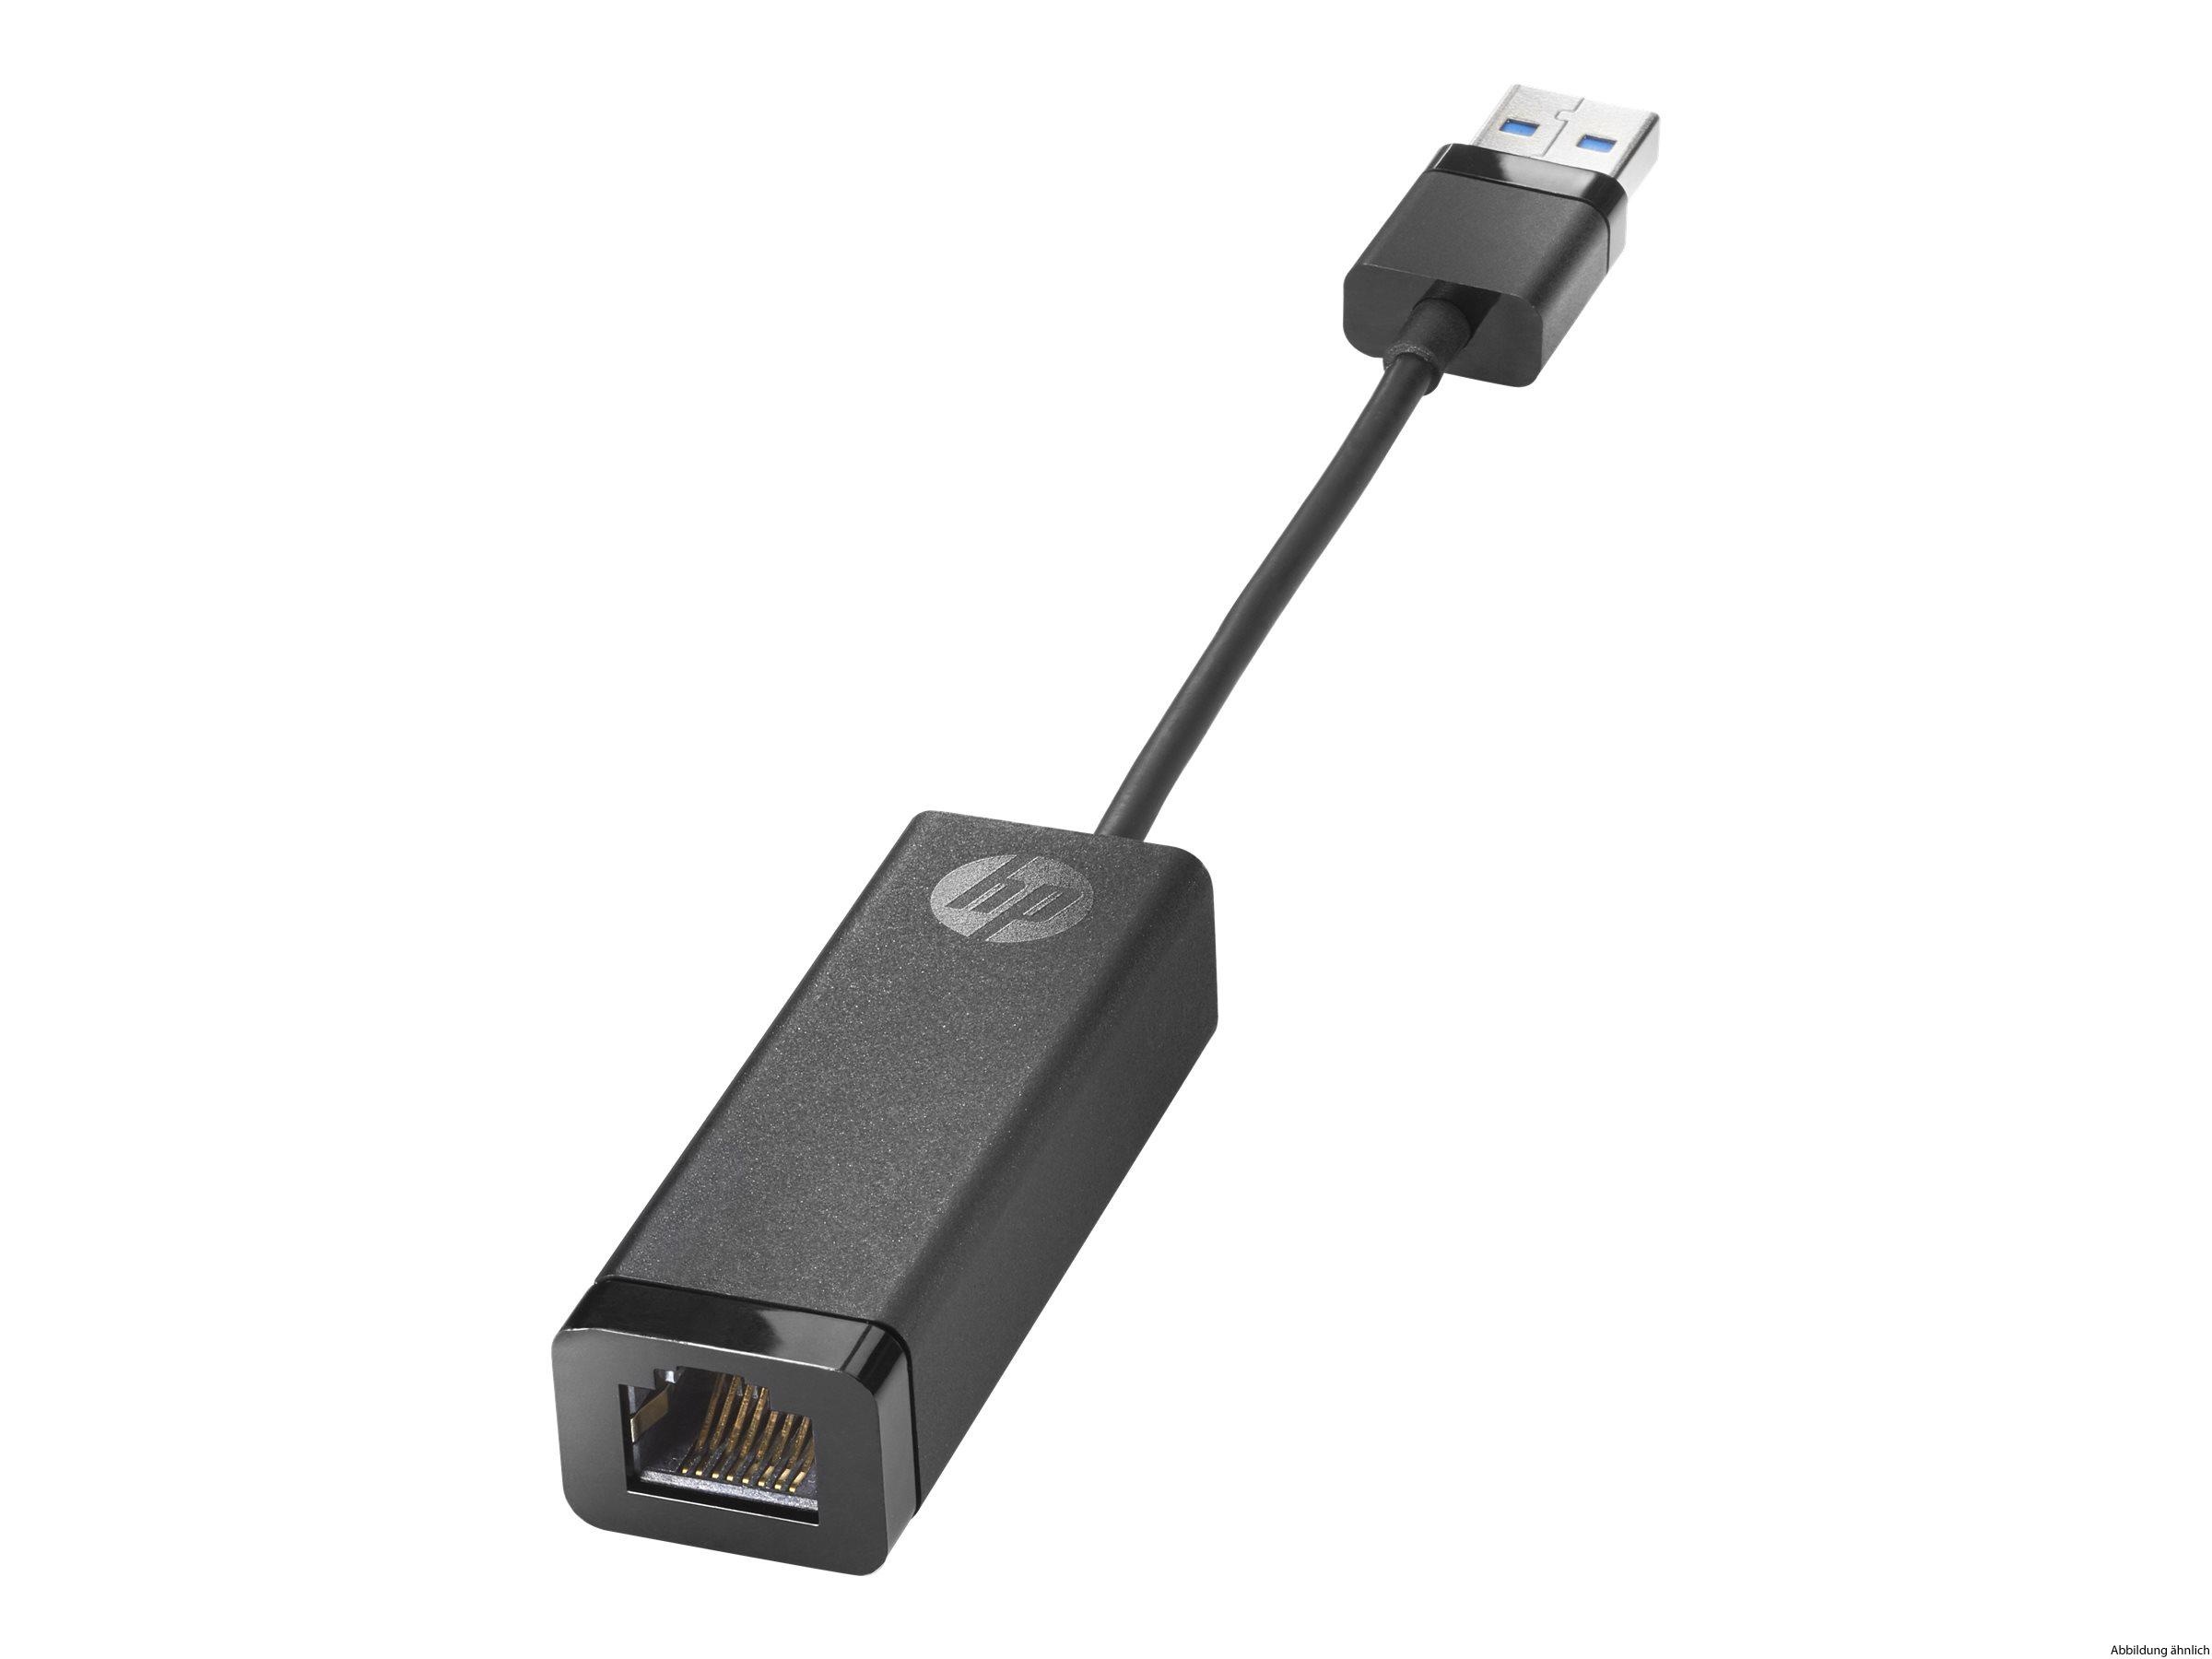 HP USB 3.0 to Gigabit RJ-45 LAN Adapter